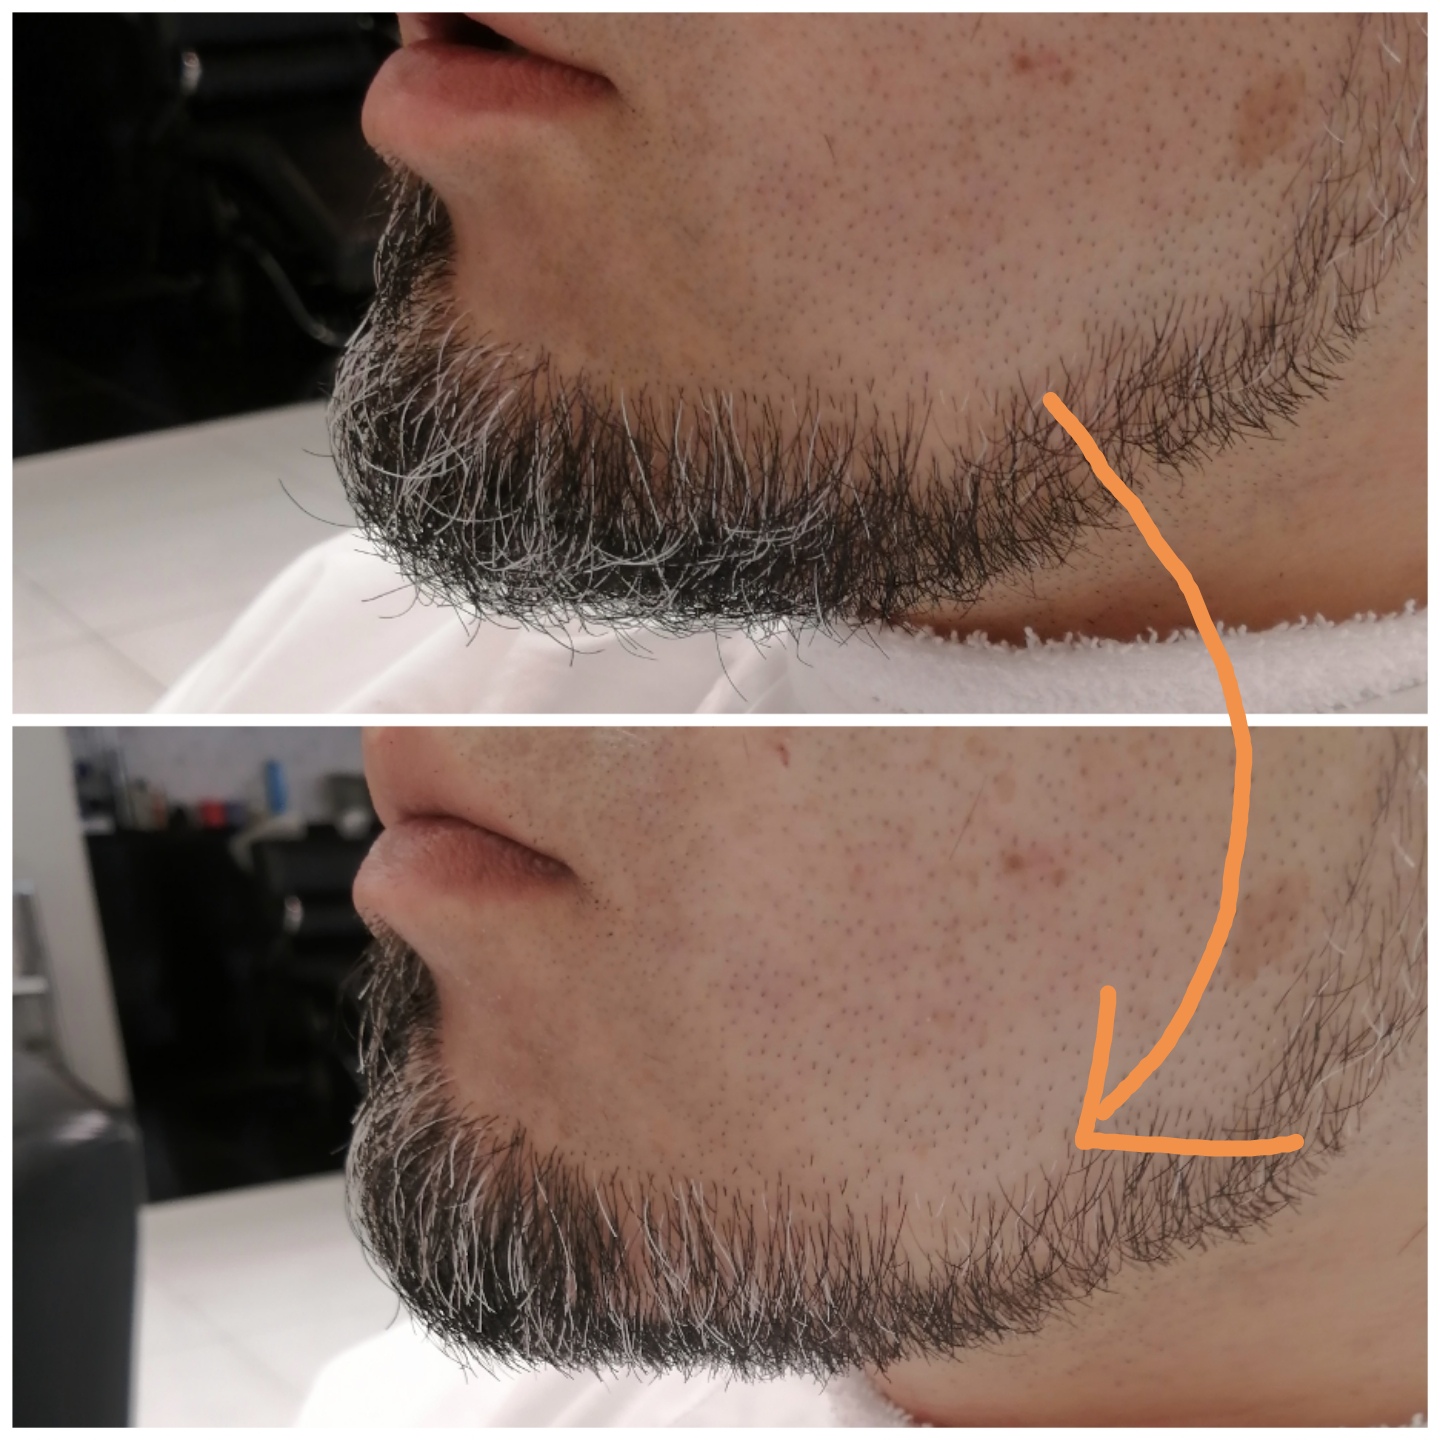 髭 を 生え にくく する 方法